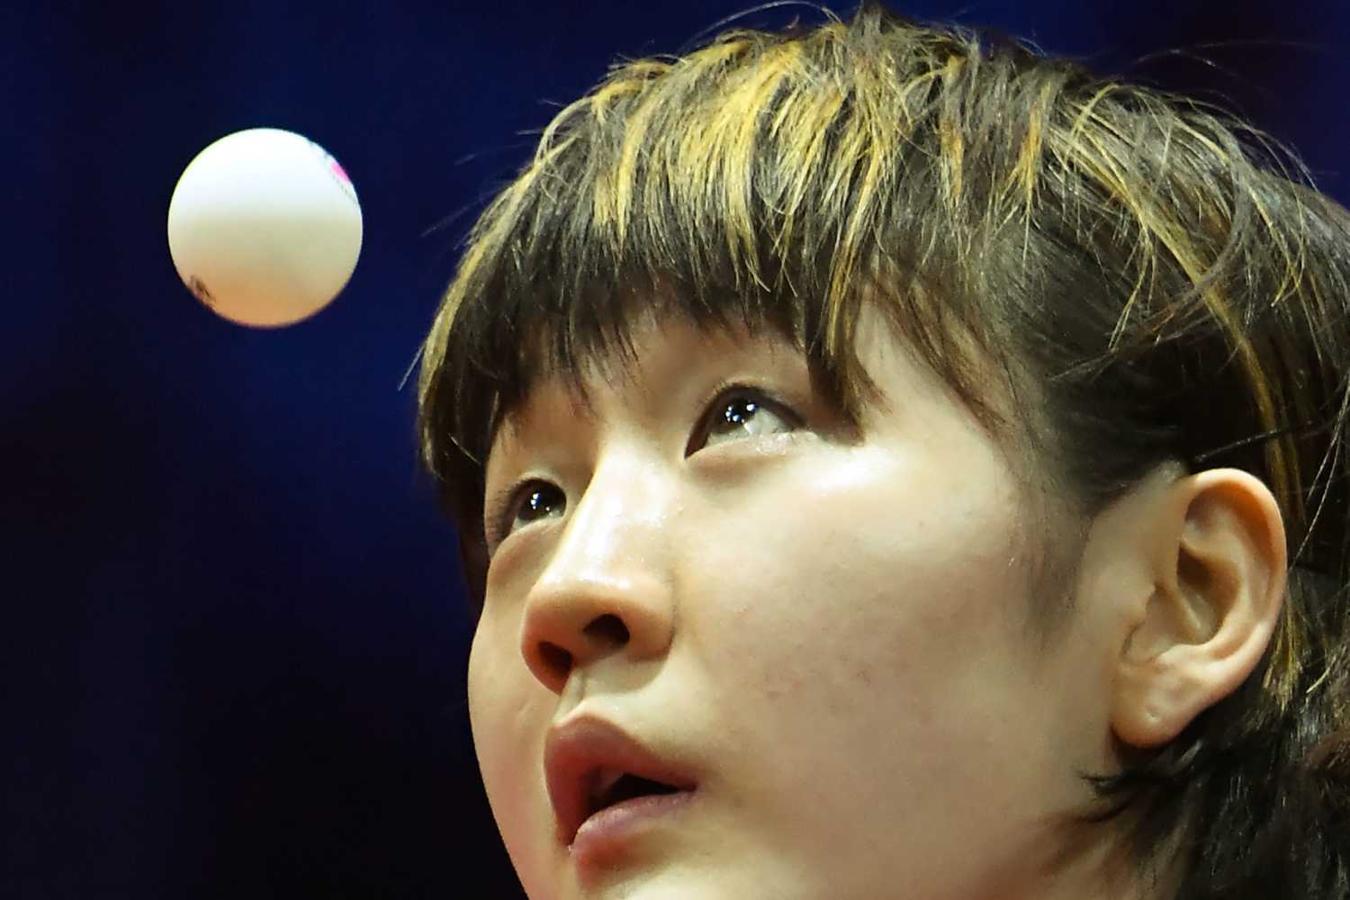 La deportista china Chen Meng sigue la bola con la mirada durante el partido del Campeonato del Mundo de Tenis de Mesa, en Budapest 